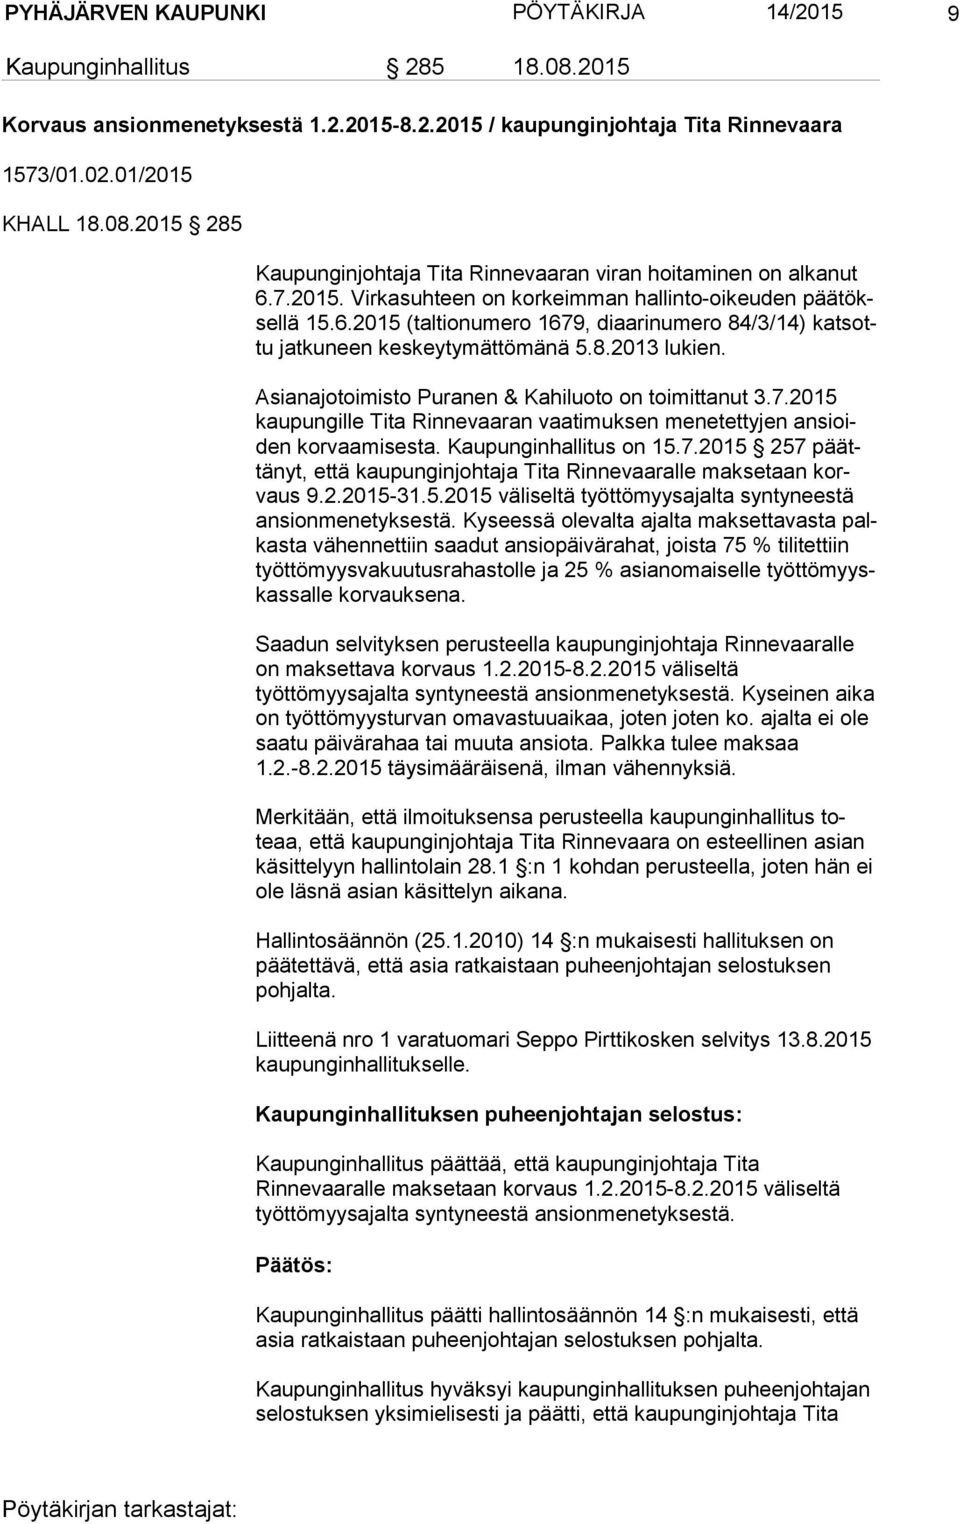 Asianajotoimisto Puranen & Kahiluoto on toimittanut 3.7.2015 kau pun gil le Tita Rinnevaaran vaatimuksen menetettyjen an sioiden korvaamisesta. Kaupunginhallitus on 15.7.2015 257 päättä nyt, että kaupunginjohtaja Tita Rinnevaaralle maksetaan korvaus 9.